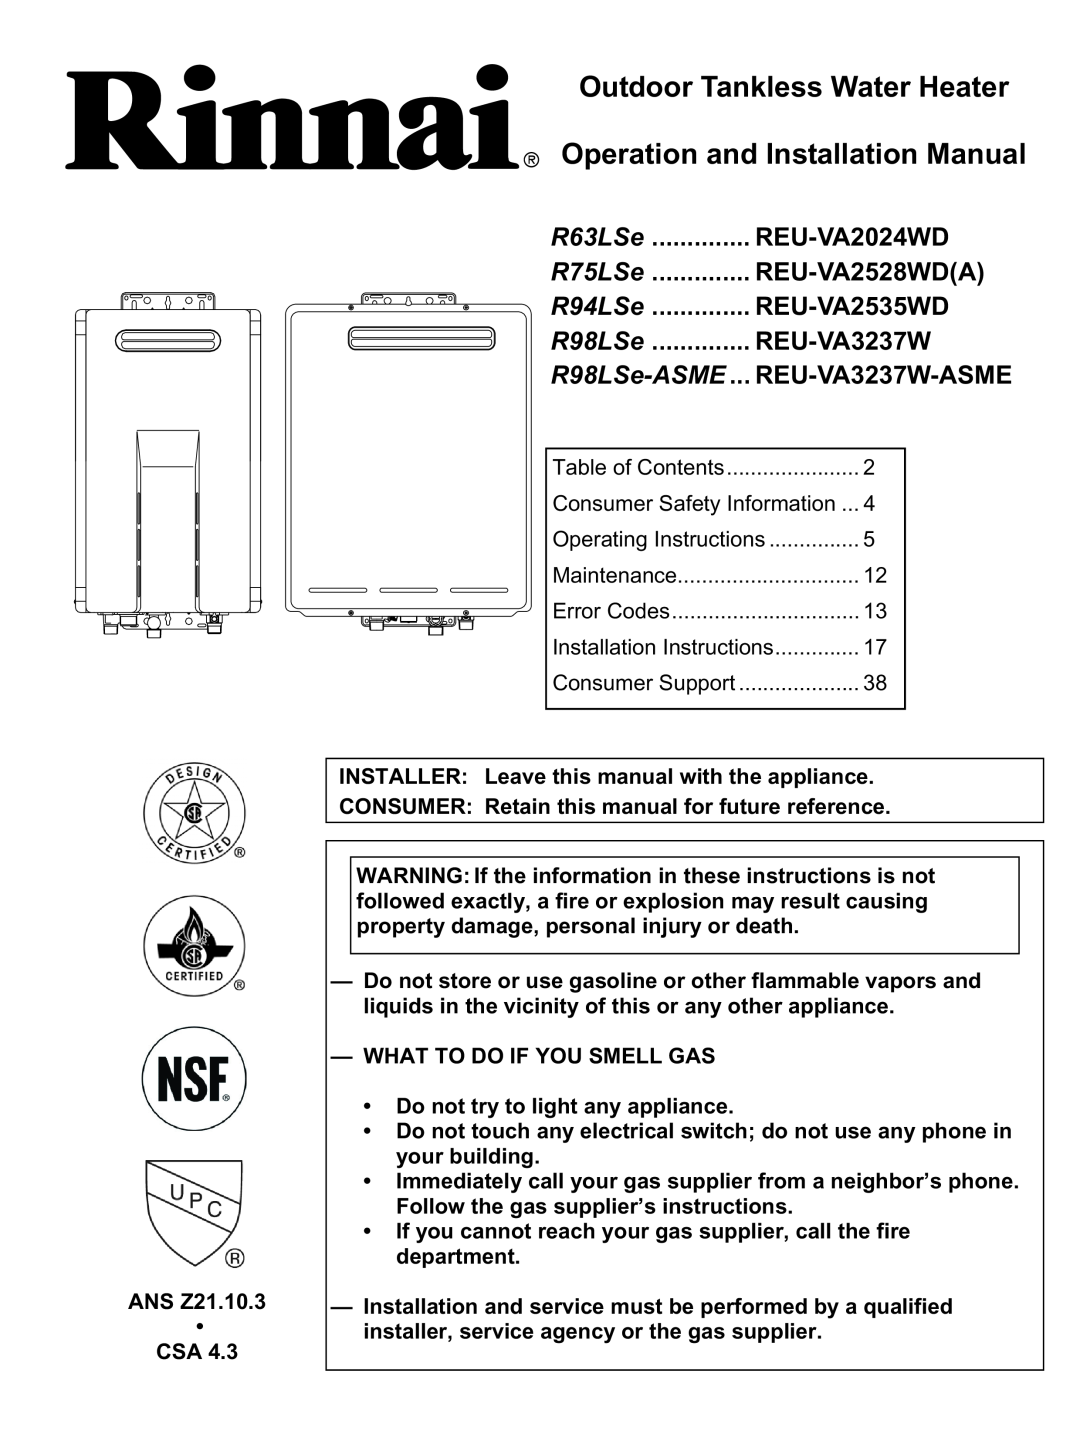 Rinnai R63LSe installation manual Outdoor Tankless Water Heater, Operation and Installation Manual, REU-VA2024WD, R75LSe 